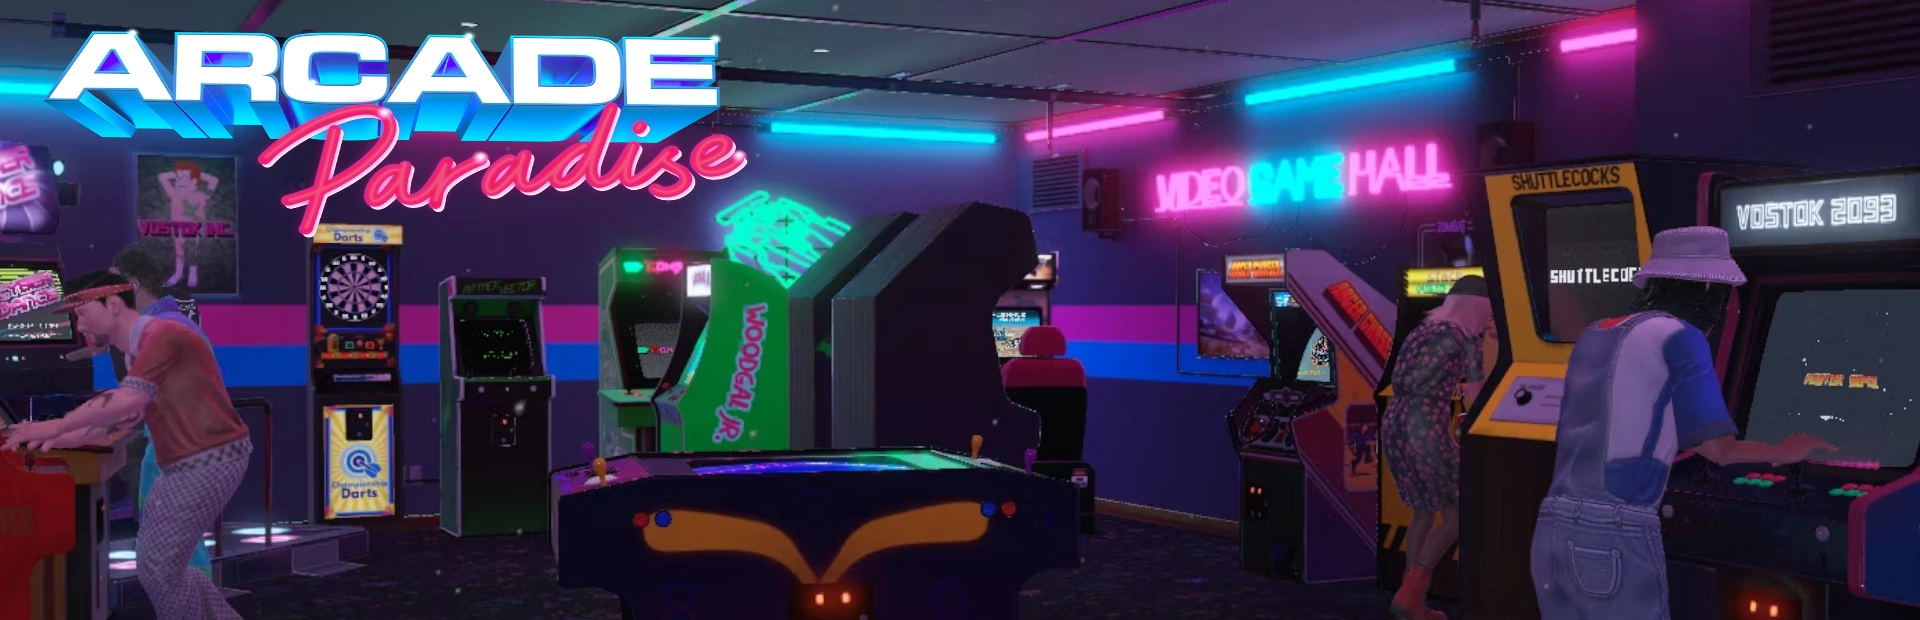 دانلود بازی Arcade Paradise برای PC | گیمباتو